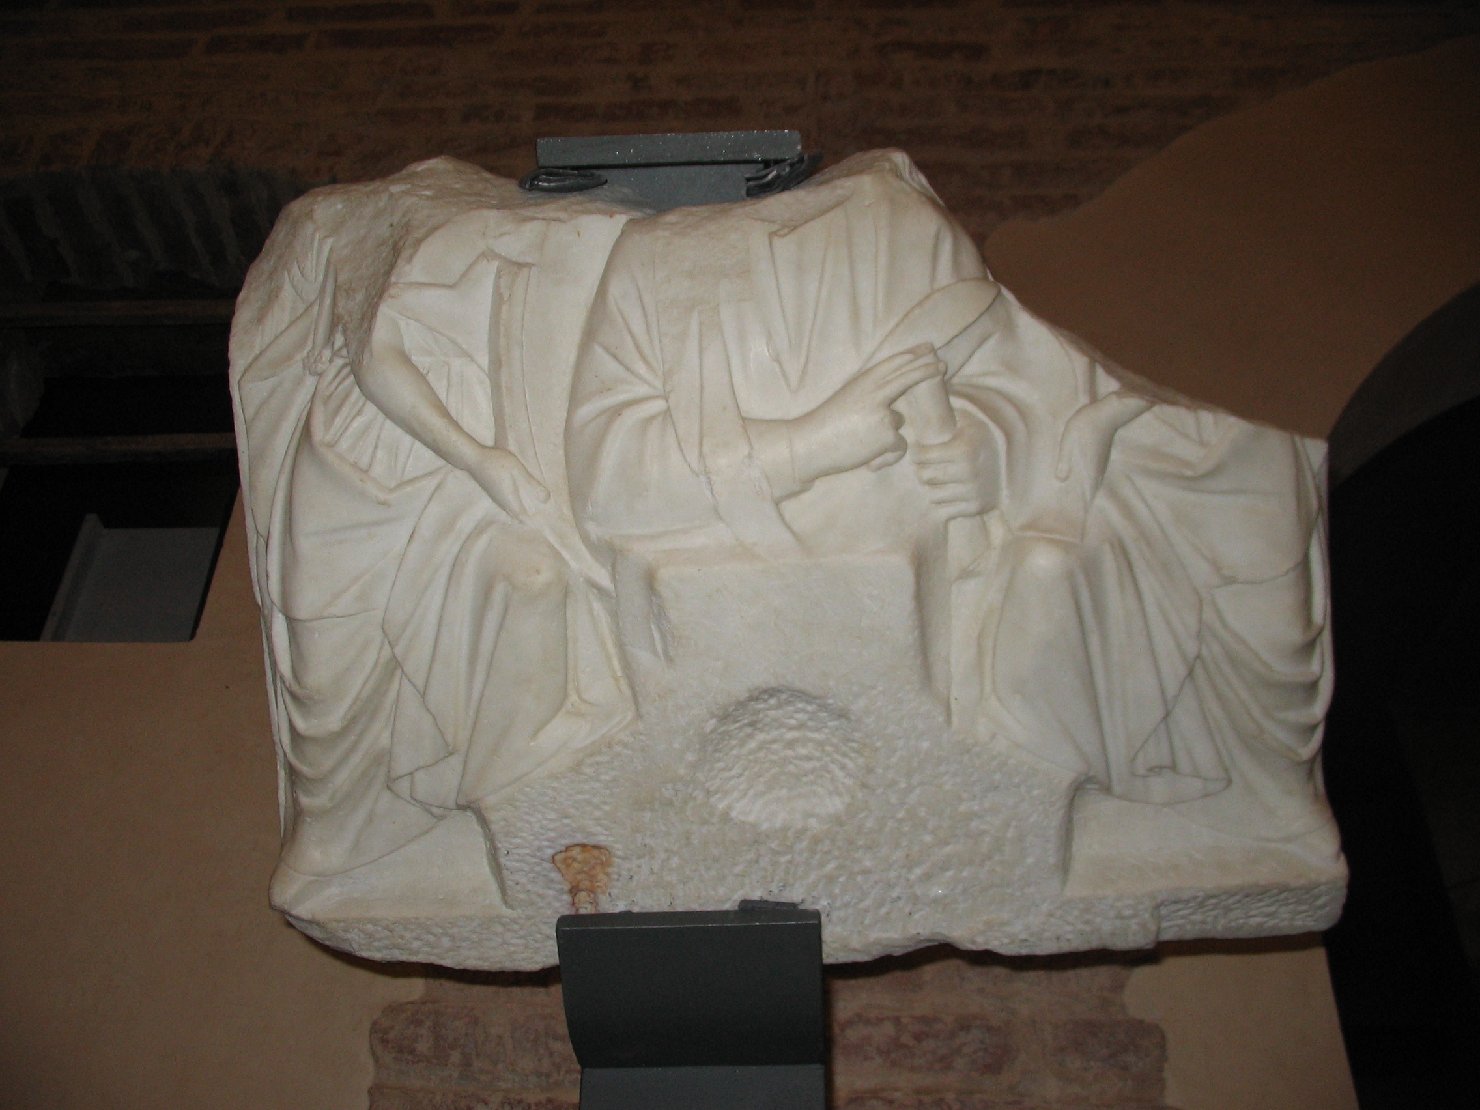 Cristo benedicente tra due angeli (pulpito, frammento) di Nicola Pisano (attribuito) (metà sec. XIII)